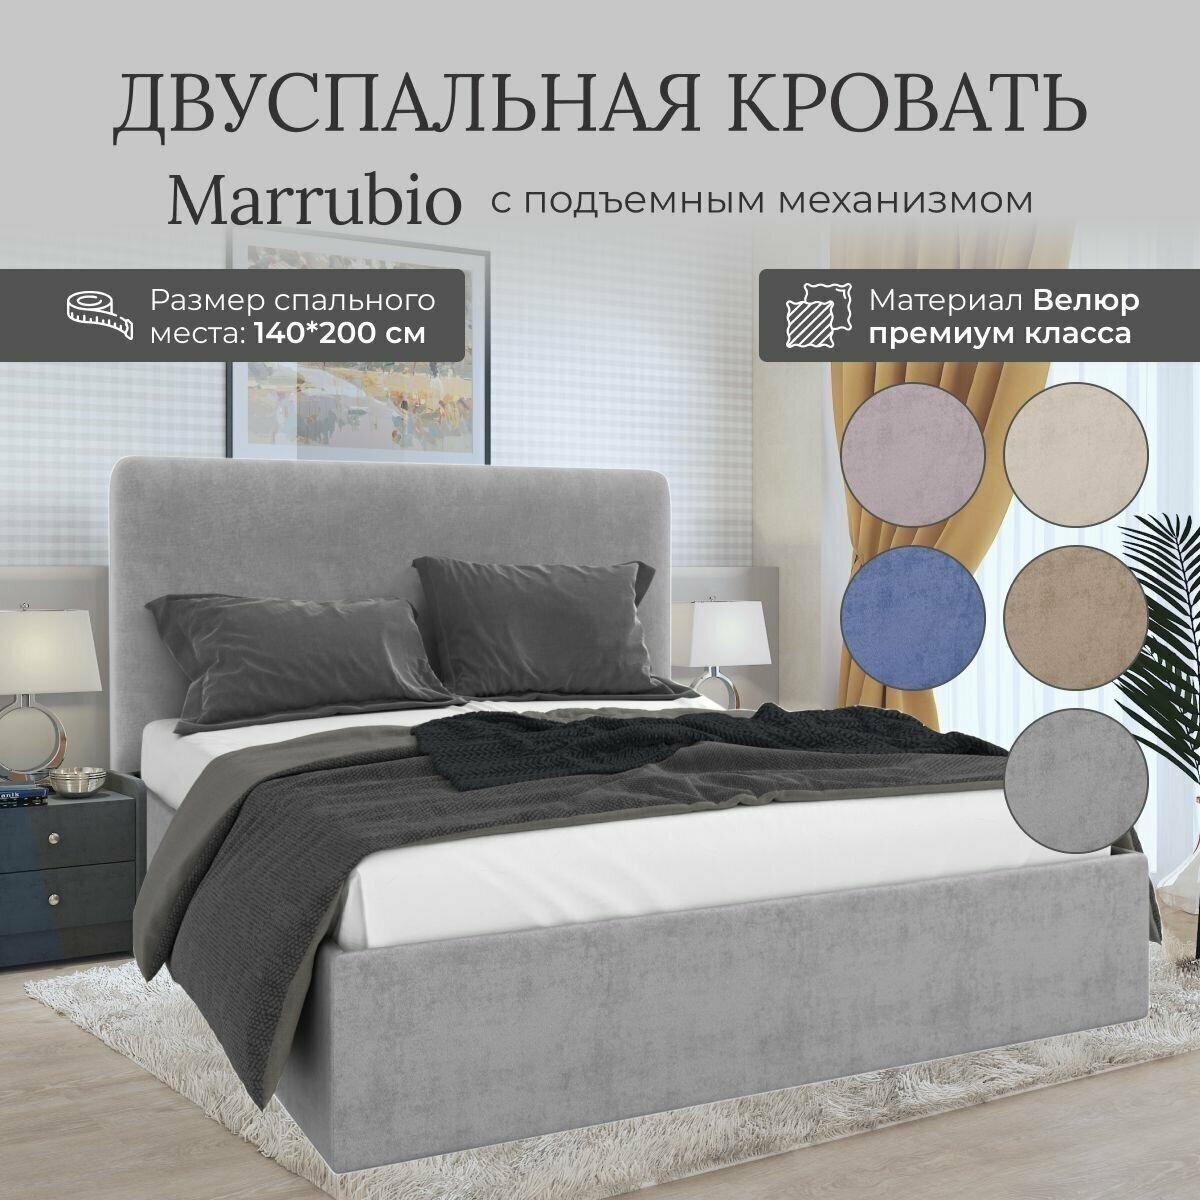 Кровать с подъемным механизмом Luxson Marrubio двуспальная размер 90х200